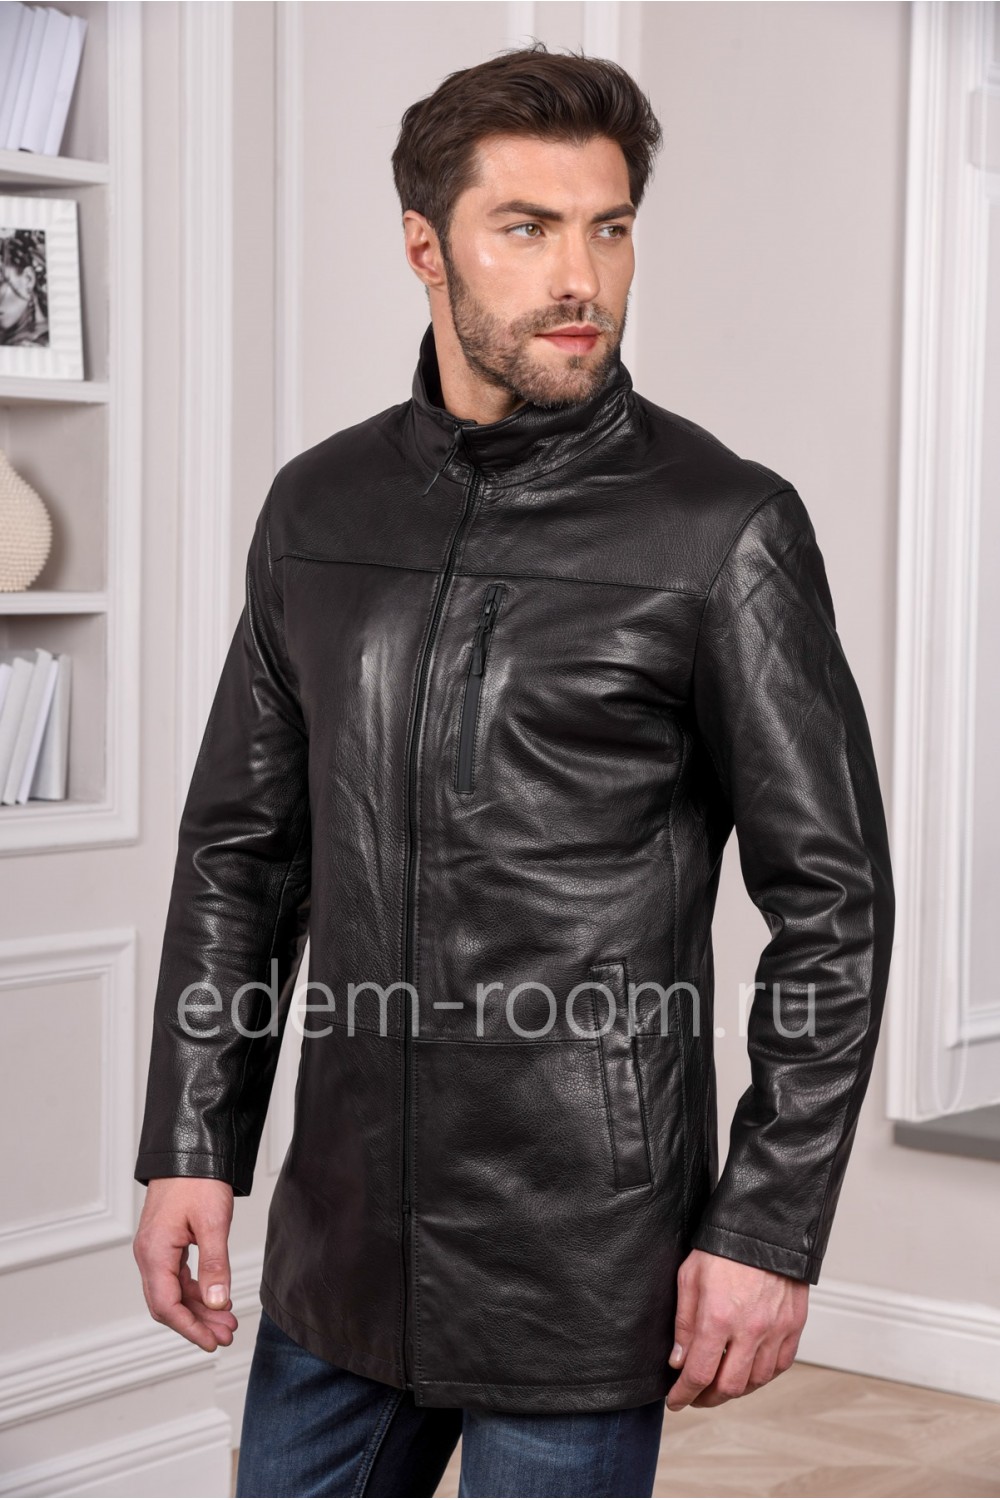 Мужская черная куртка кожаная удлиненная - натуральная кожа